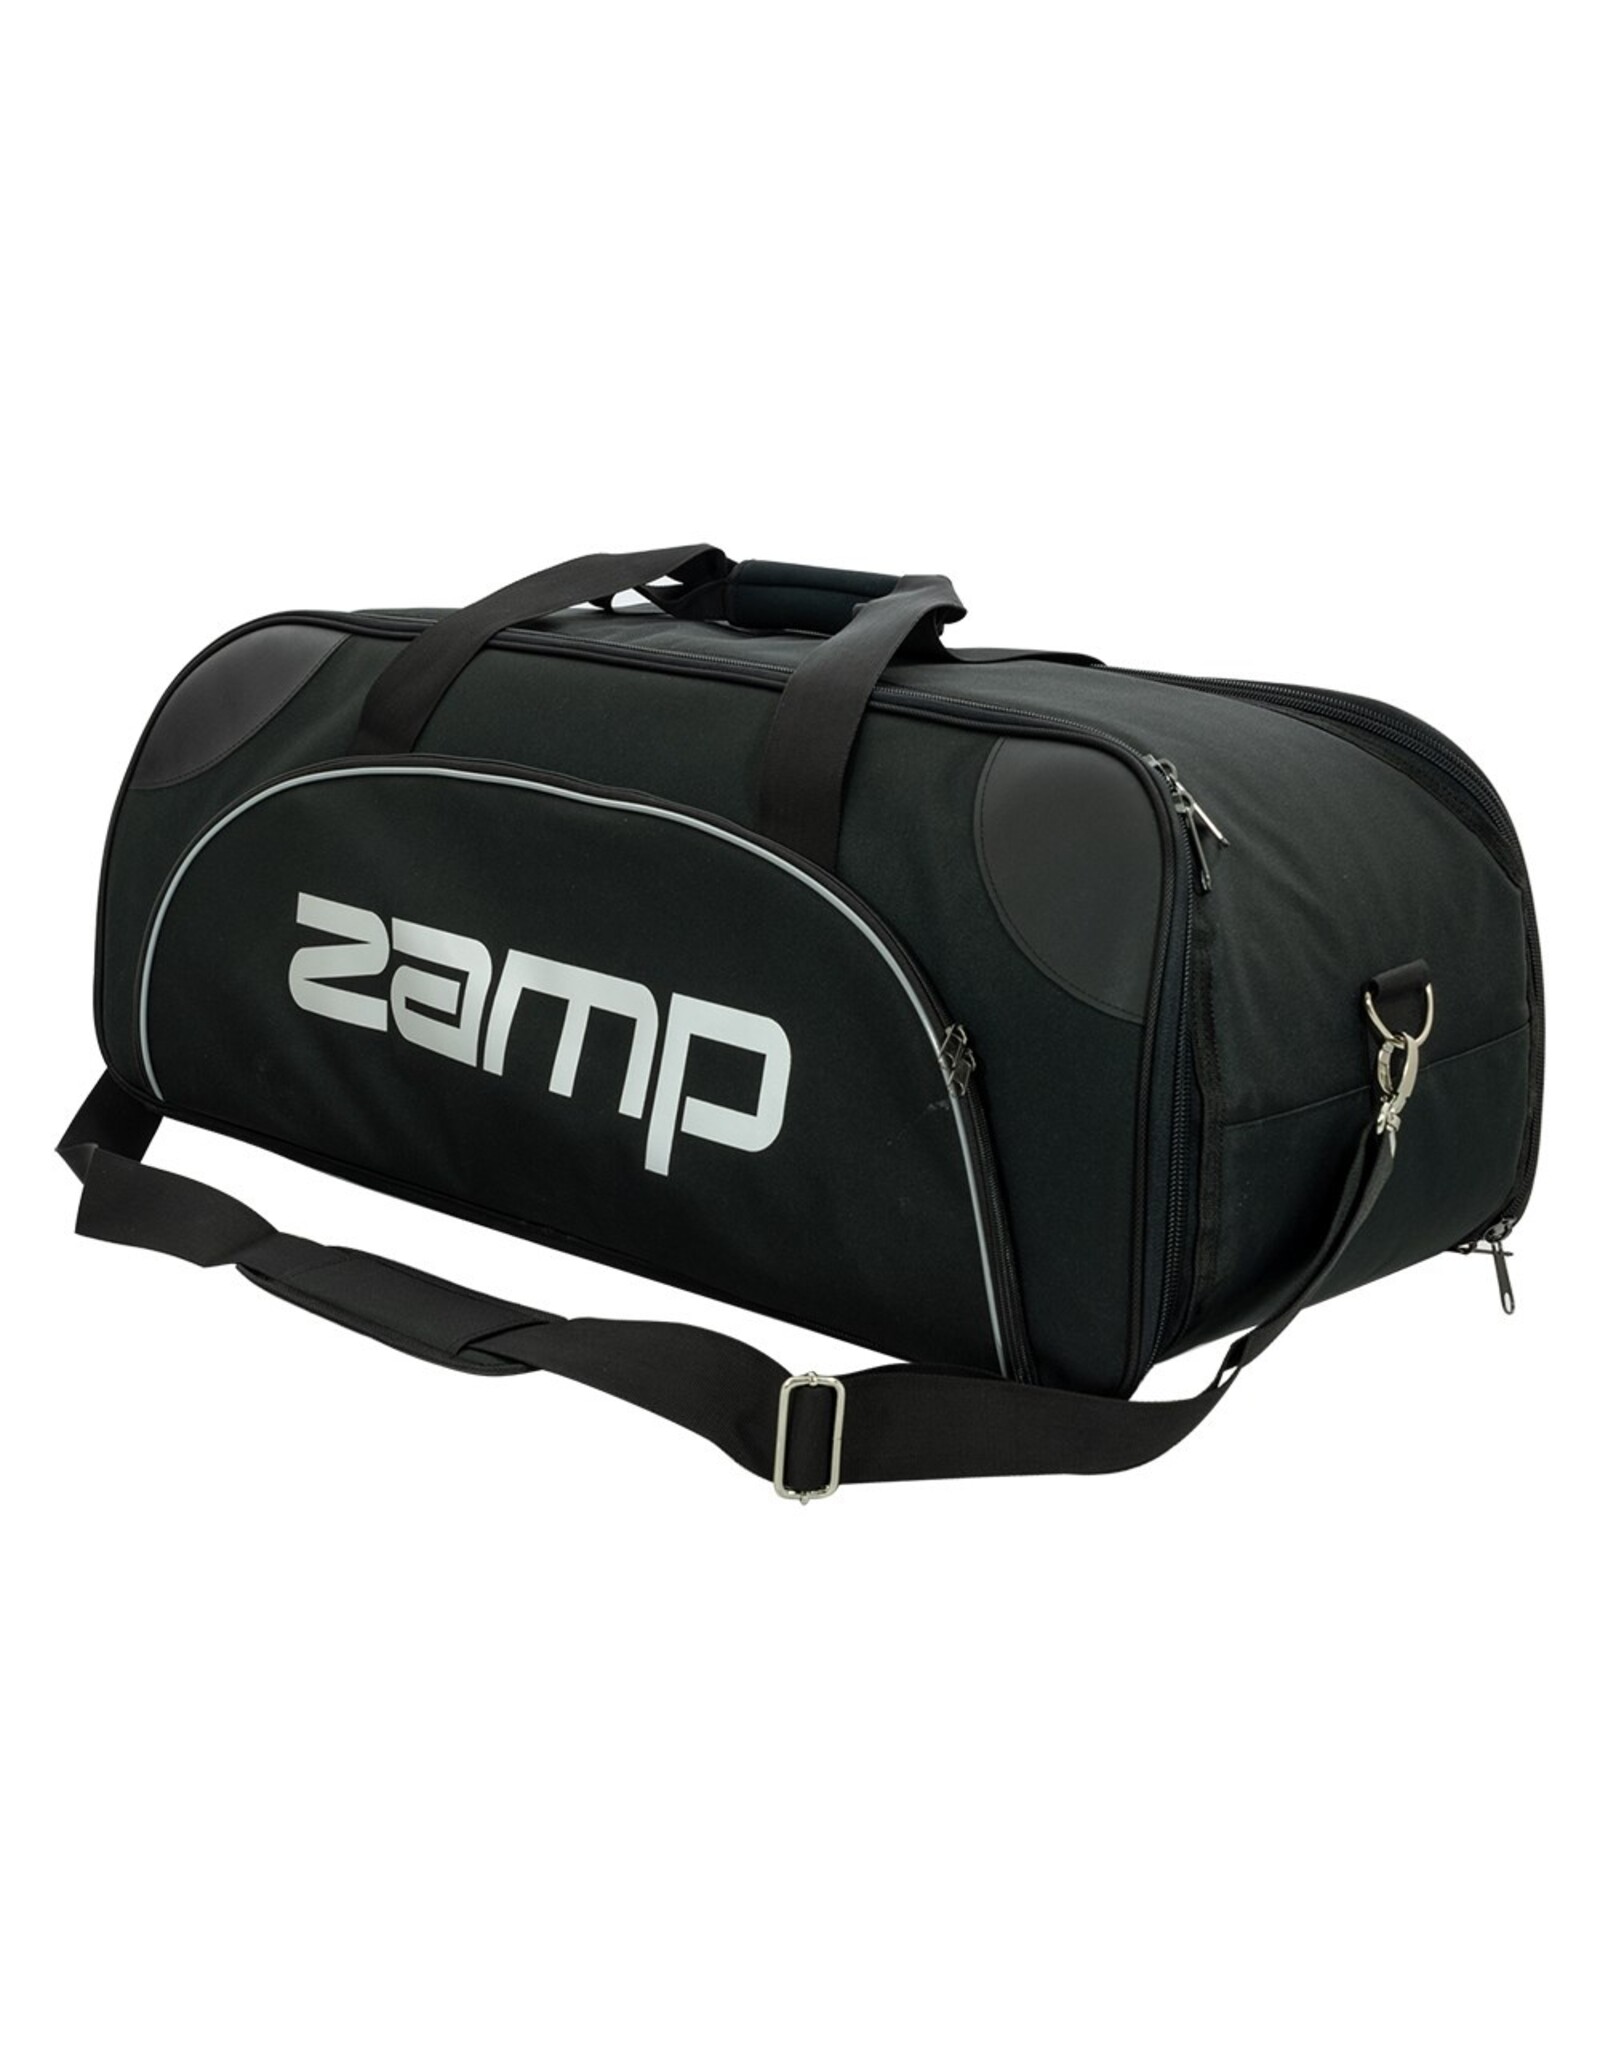 Zamp Zamp Helm tas zwart groot / 3 helmen